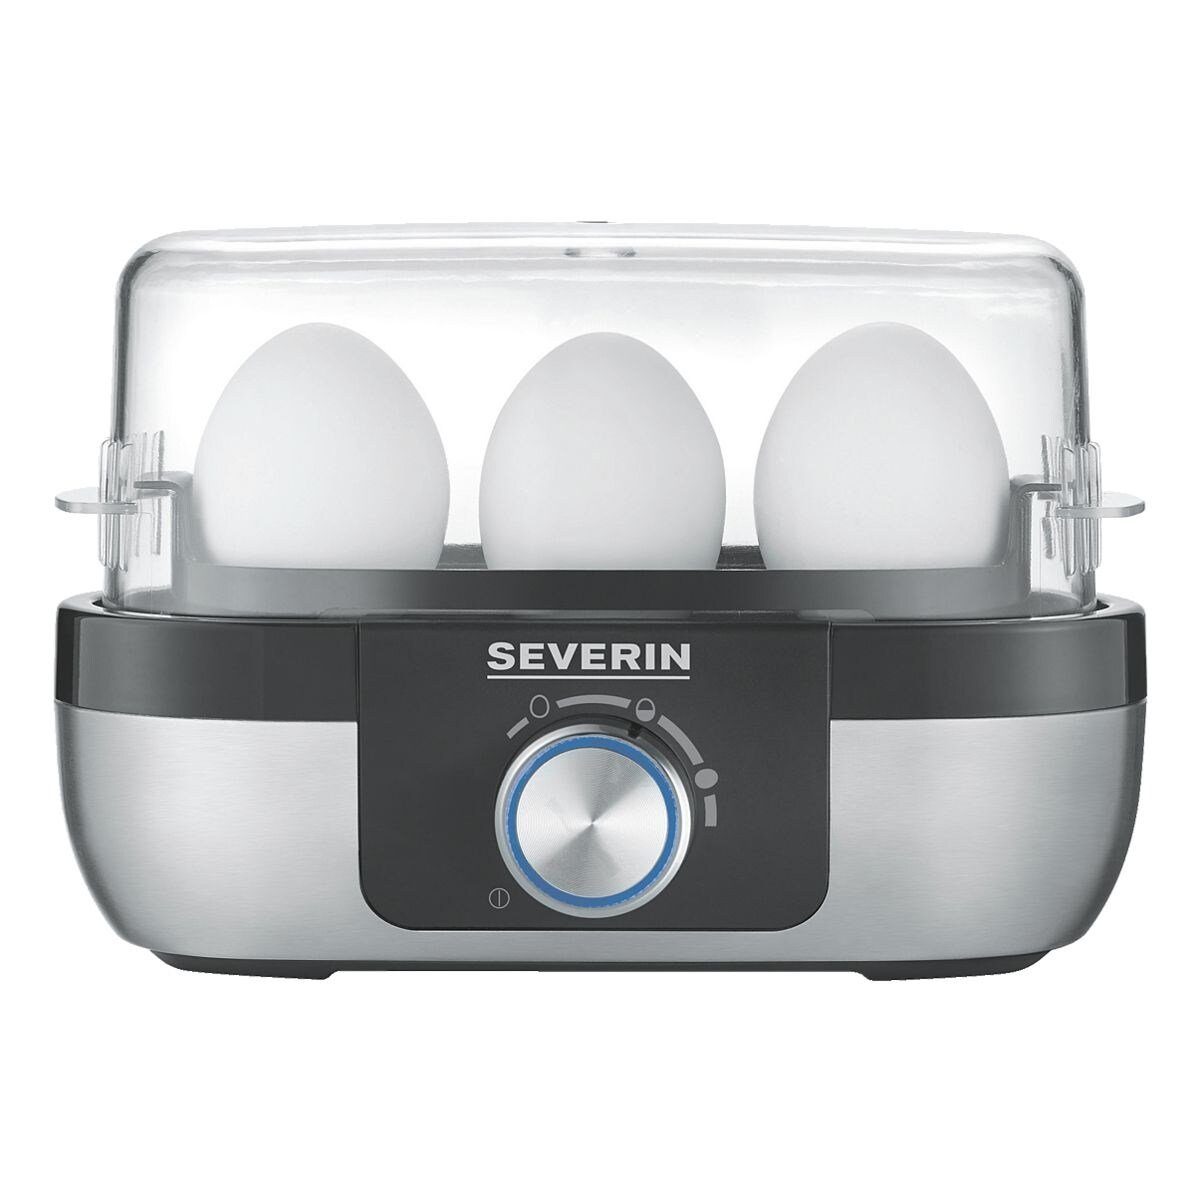 270 W, 3163, 3 mit elektronischer für EK Eierkocher Kochzeitüberwachung Eier, Severin